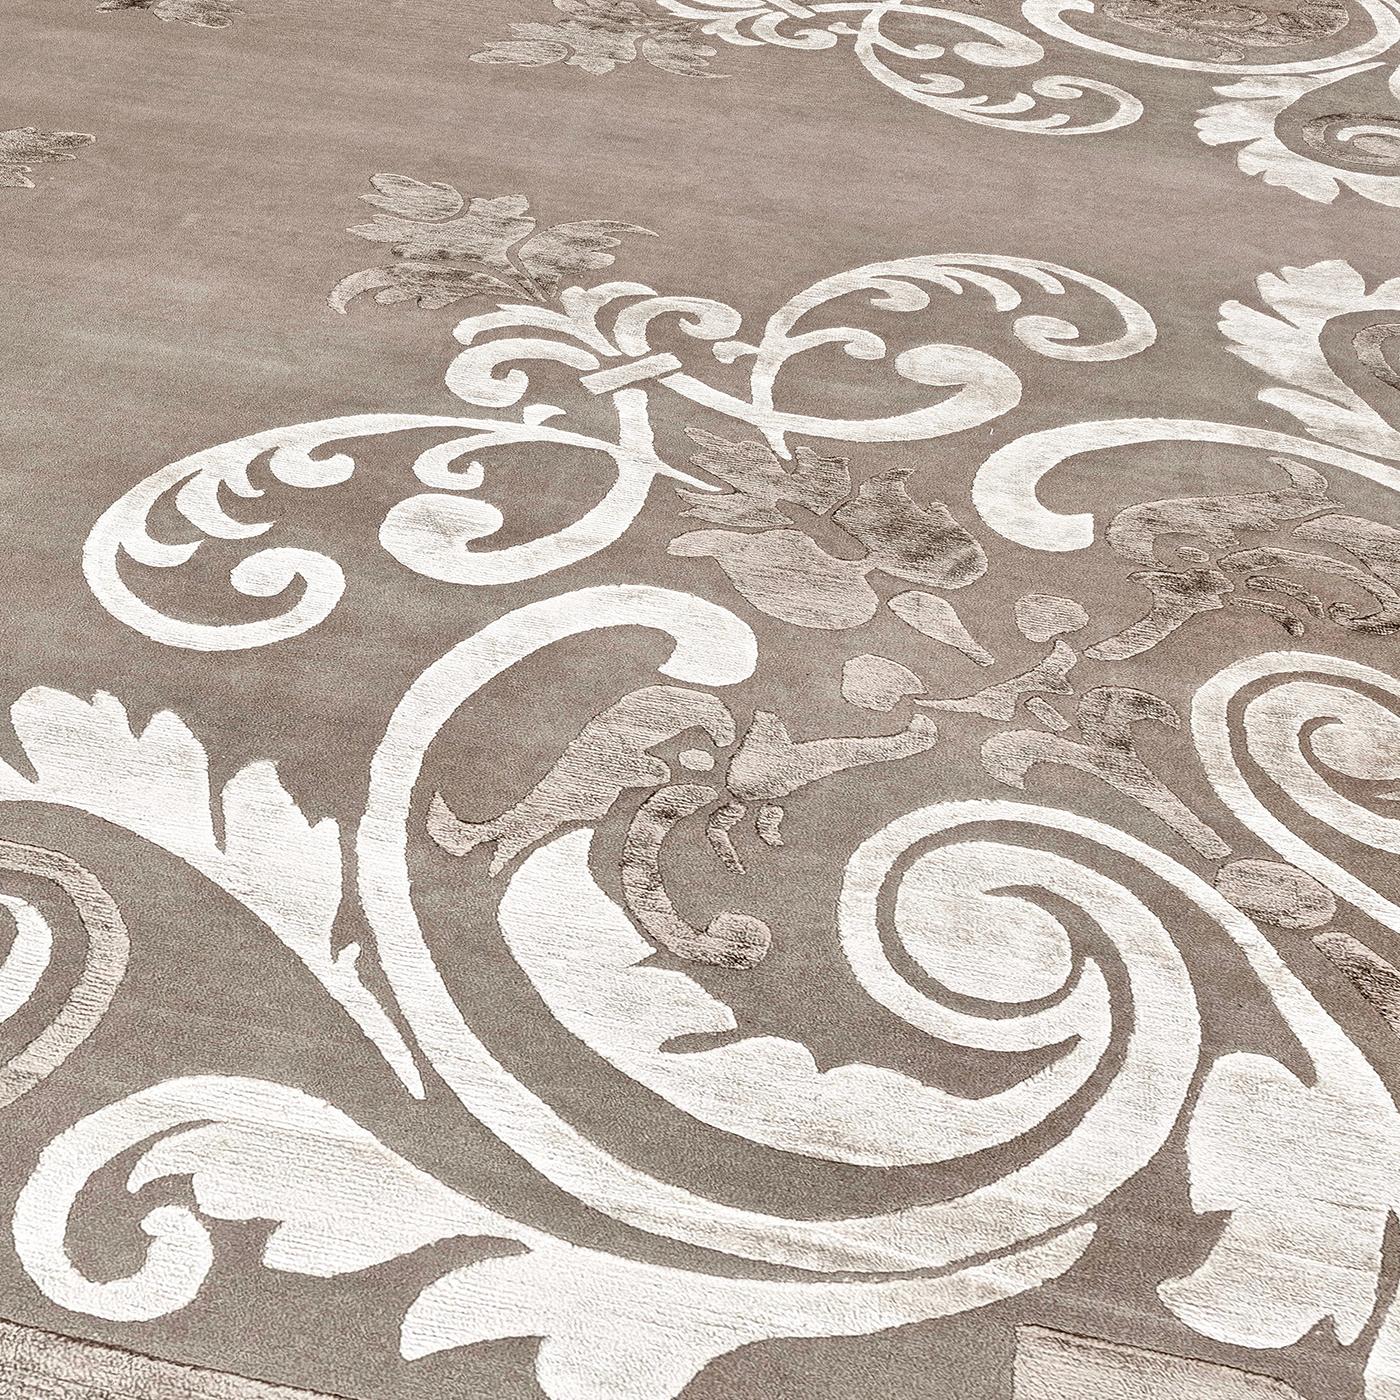 La splendeur des palais antiques et nobles a inspiré le design de style baroque de ce tapis, habilement réalisé à la main par des maîtres tisserands népalais qui mélangent un pourcentage égal de soie fine et de laine de l'Himalaya. Avec une base de